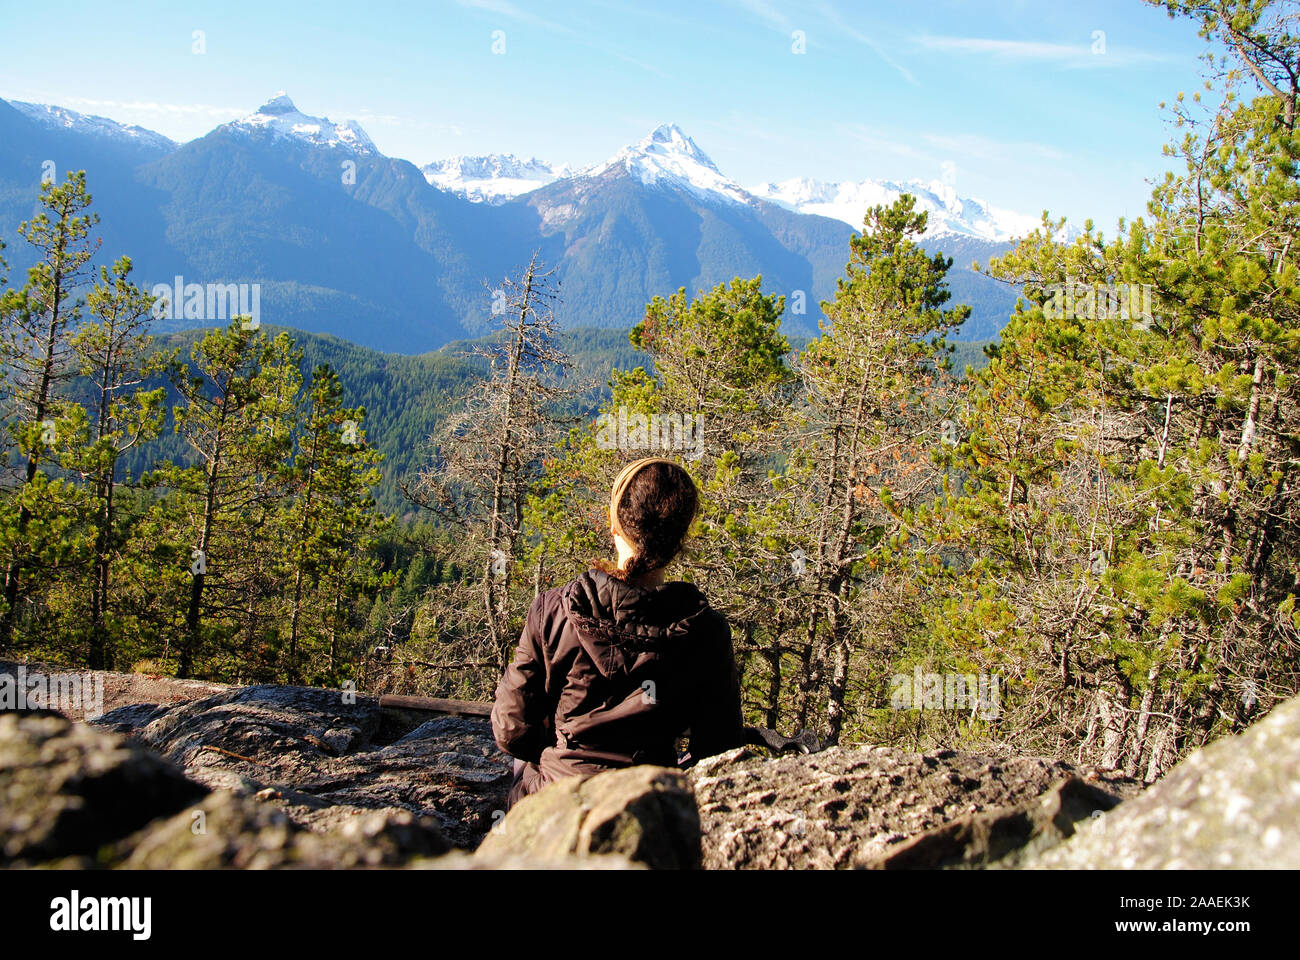 Une jeune femme brune aux cheveux tressés, assis sur les roches encore dans une posture contemplative, regardant les montagnes de Tantalus Banque D'Images